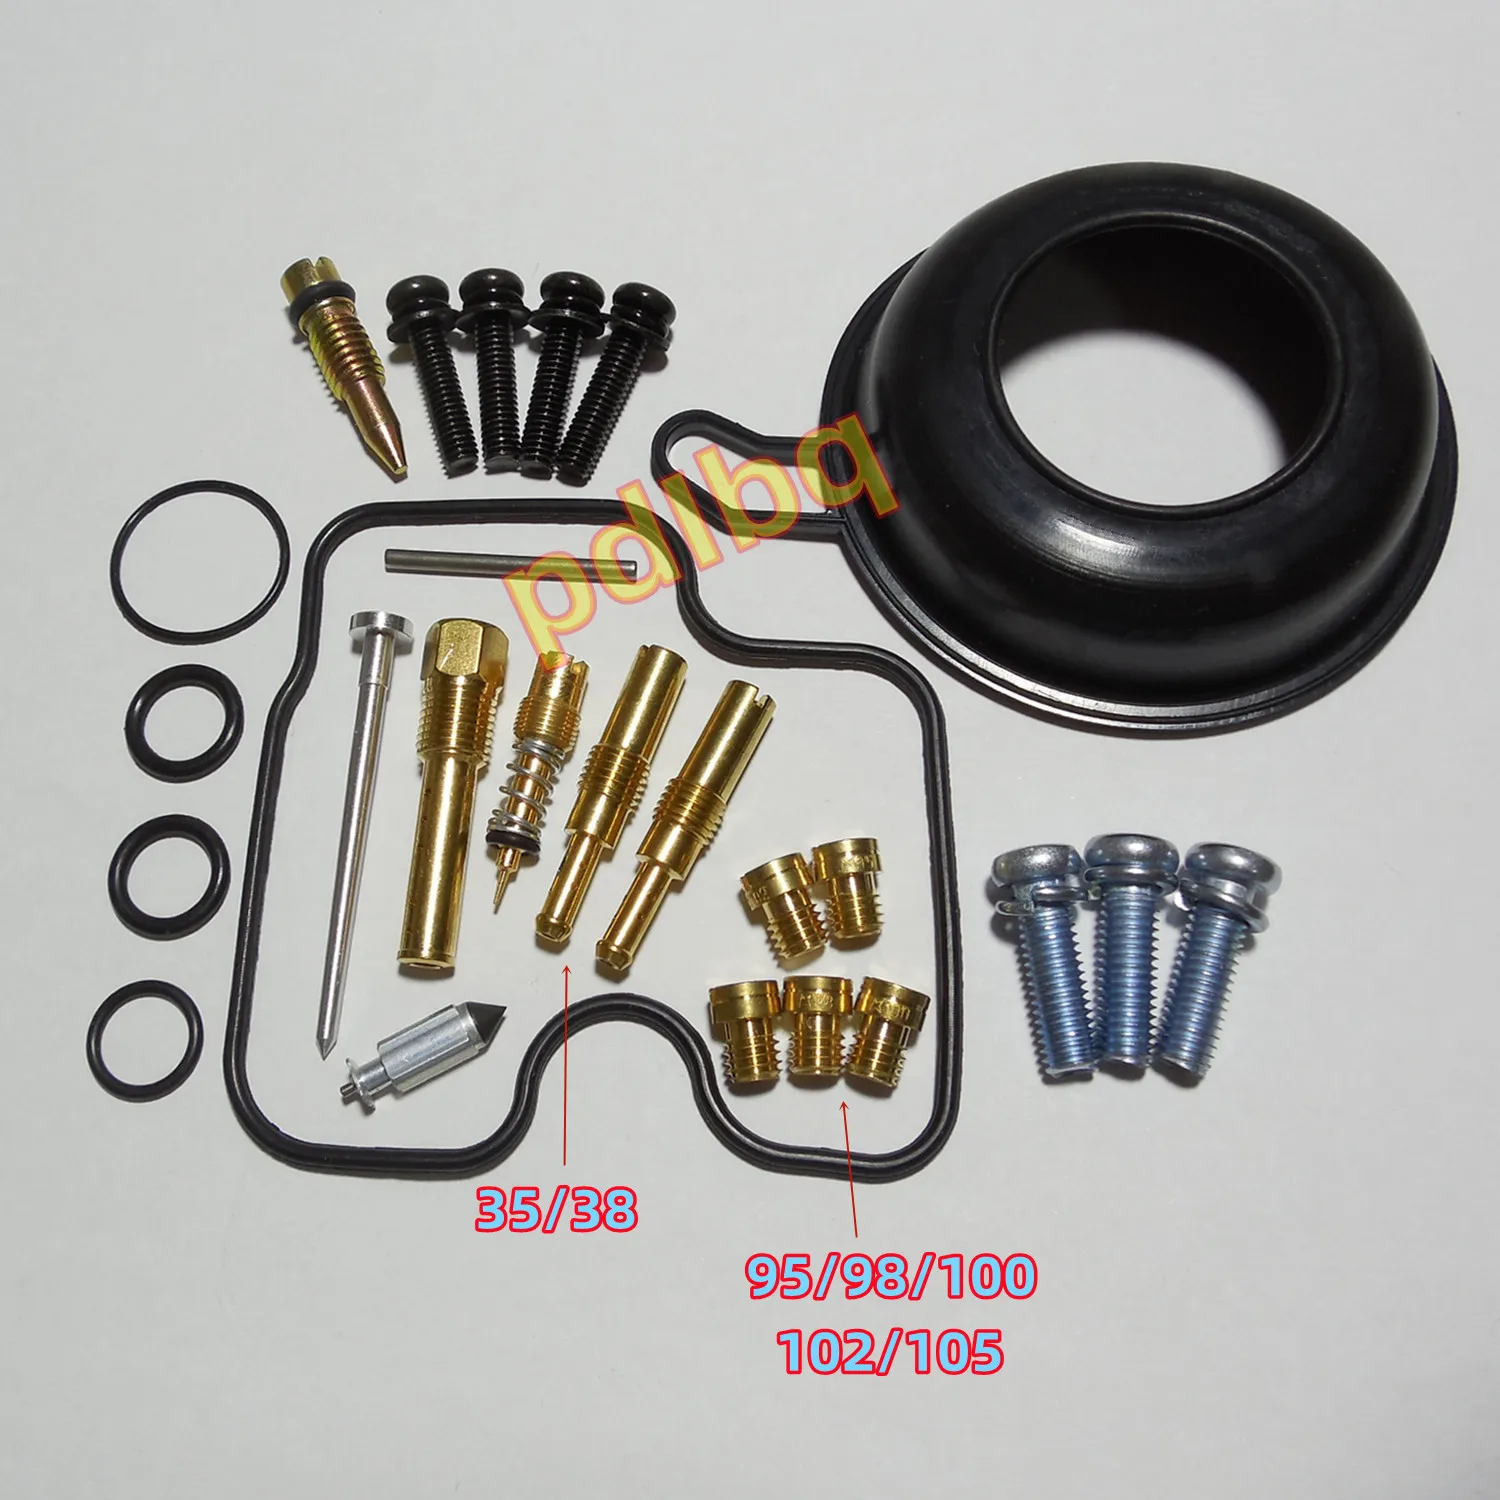 For Honda MC22/CBR22 CBR250RR Motorcycle Keihin Carburetor Repair Kit with Vacuum Diaphragm/Rubber Seal and Mounting Screws